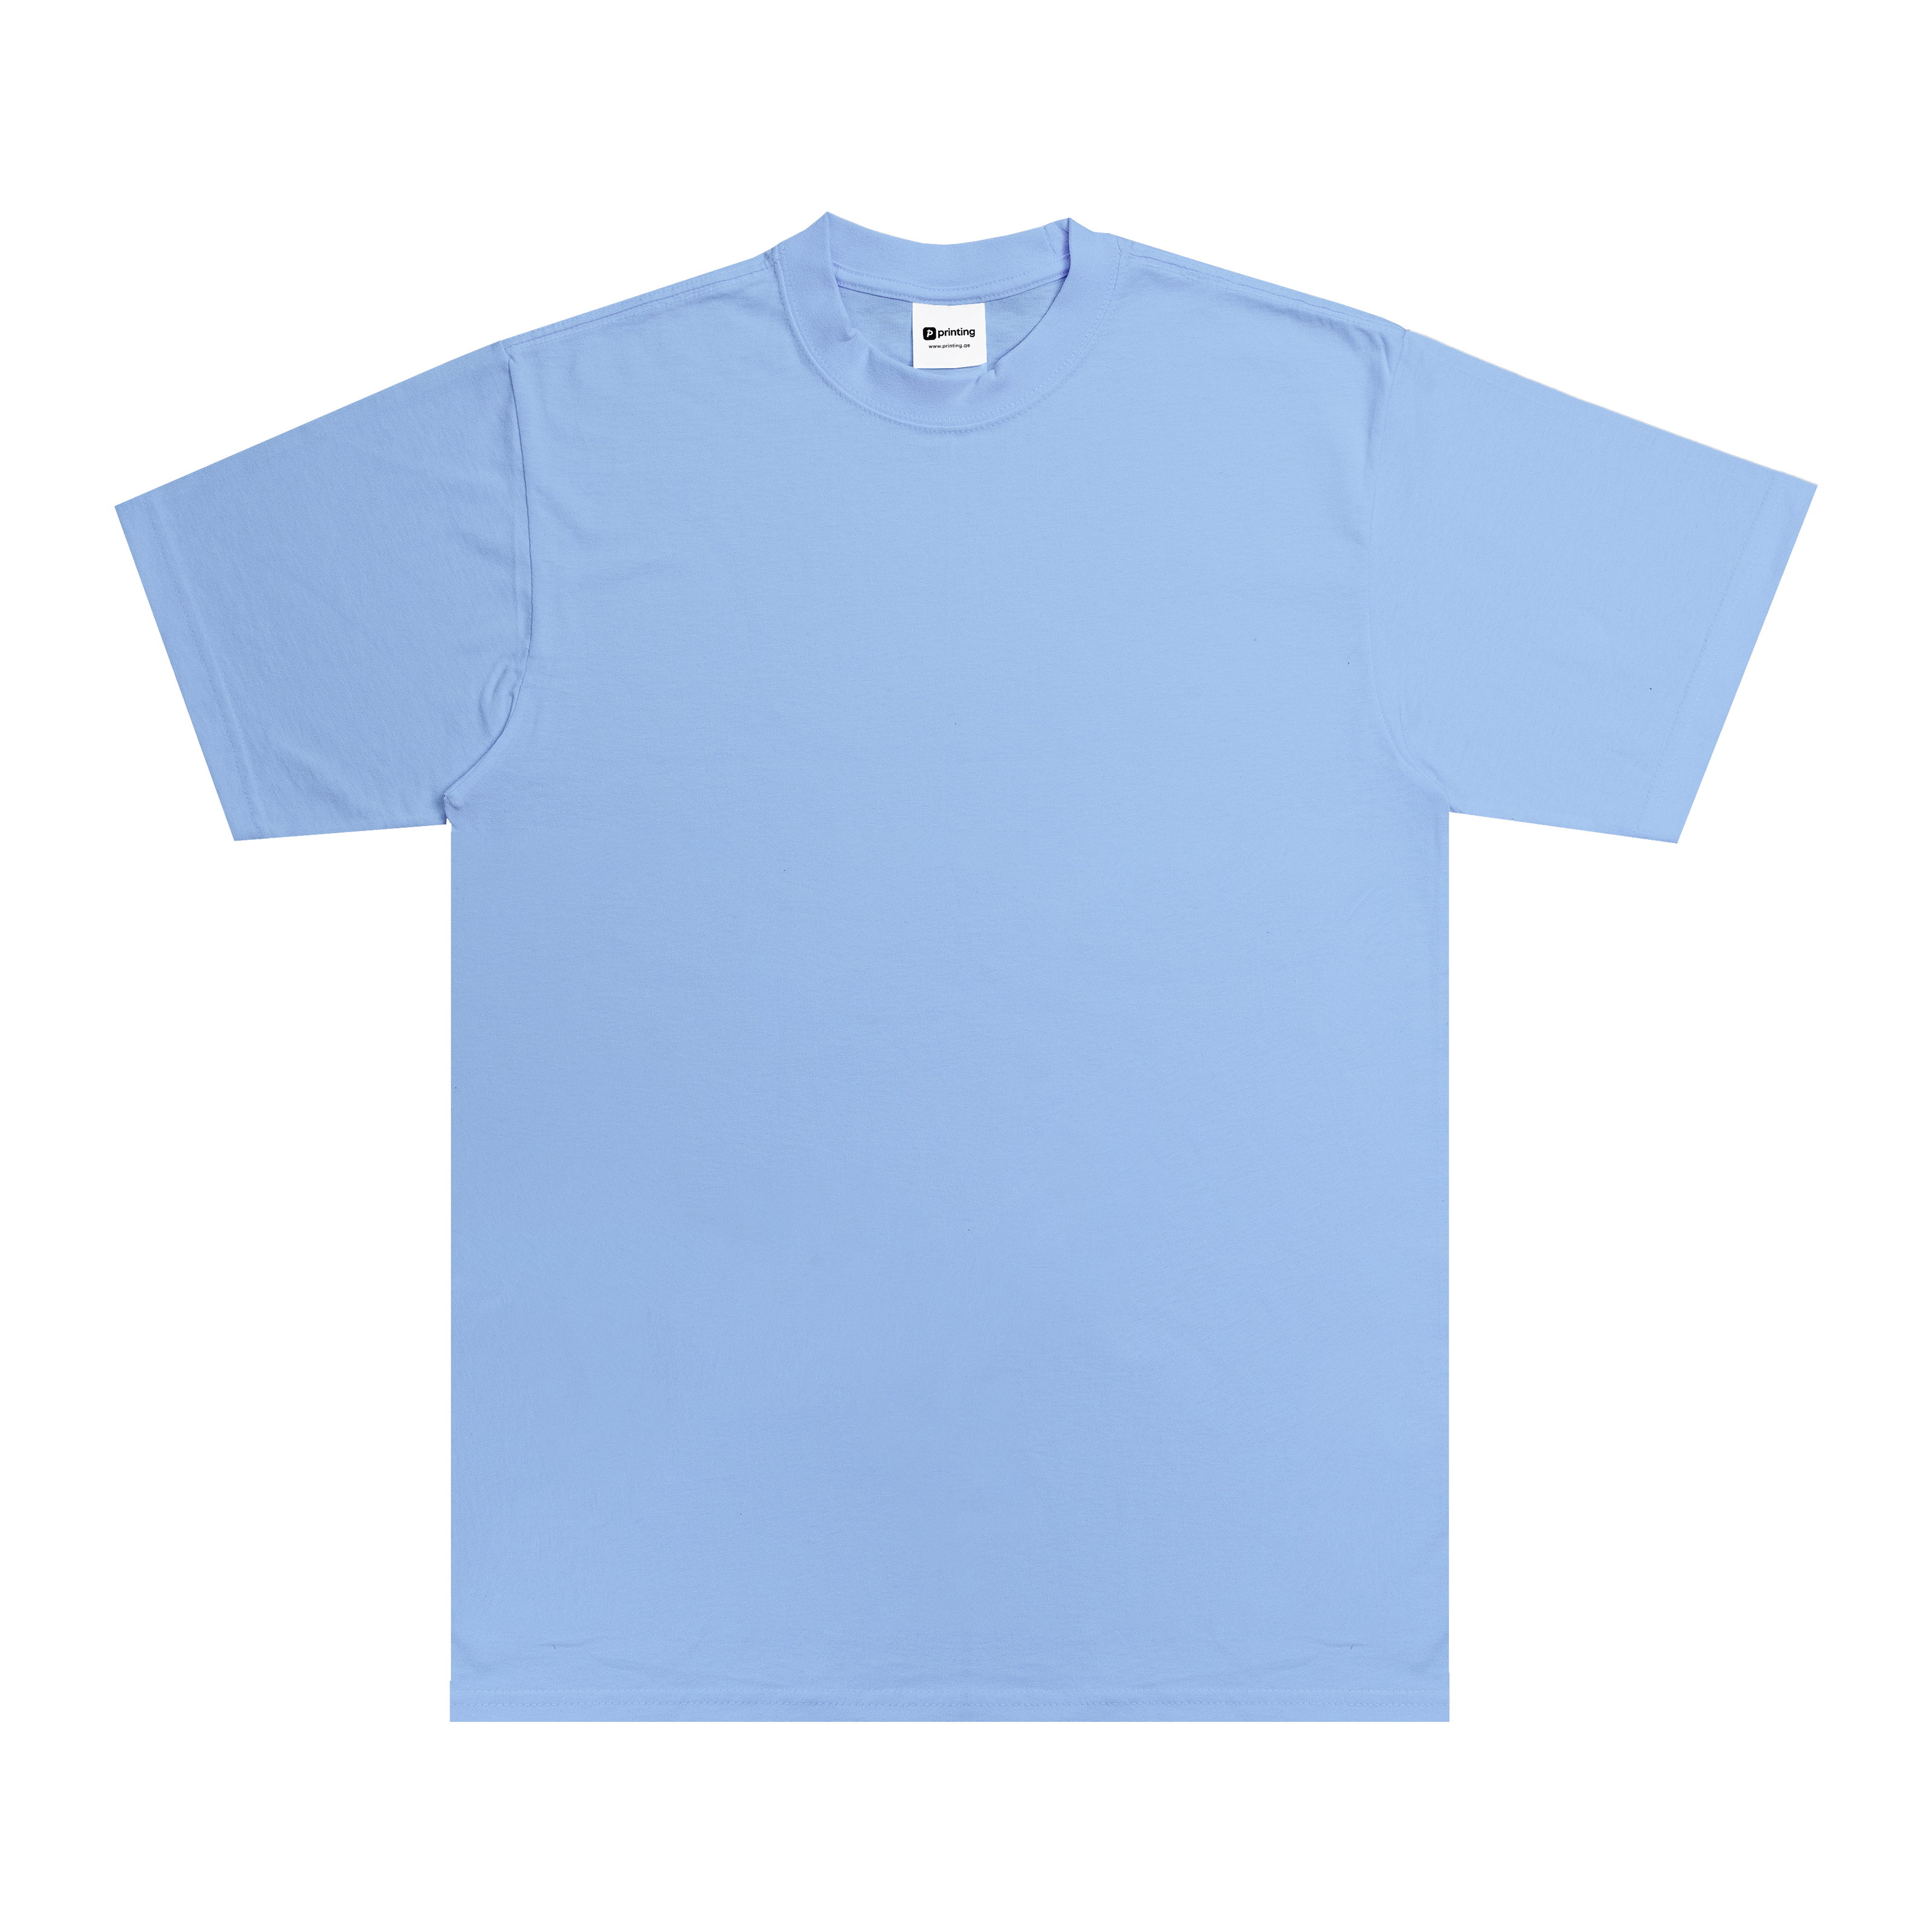 Max Heavyweight T-Shirt - Standard Size - Sky Blue